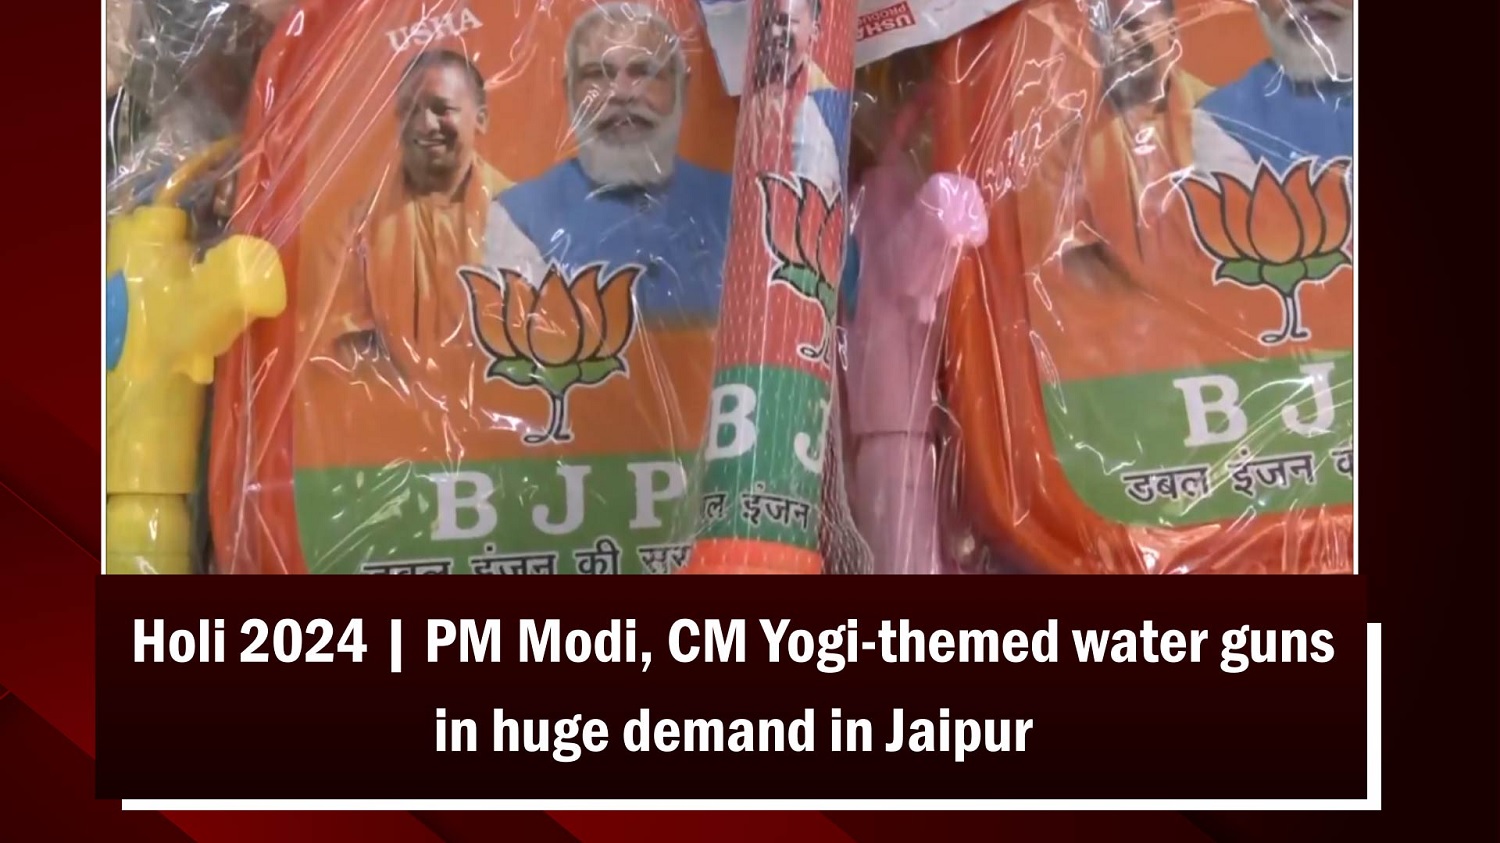 Holi 2024 | PM Narendra Modi, CM Yogi Adityanath-themed water guns in huge demand in Jaipur